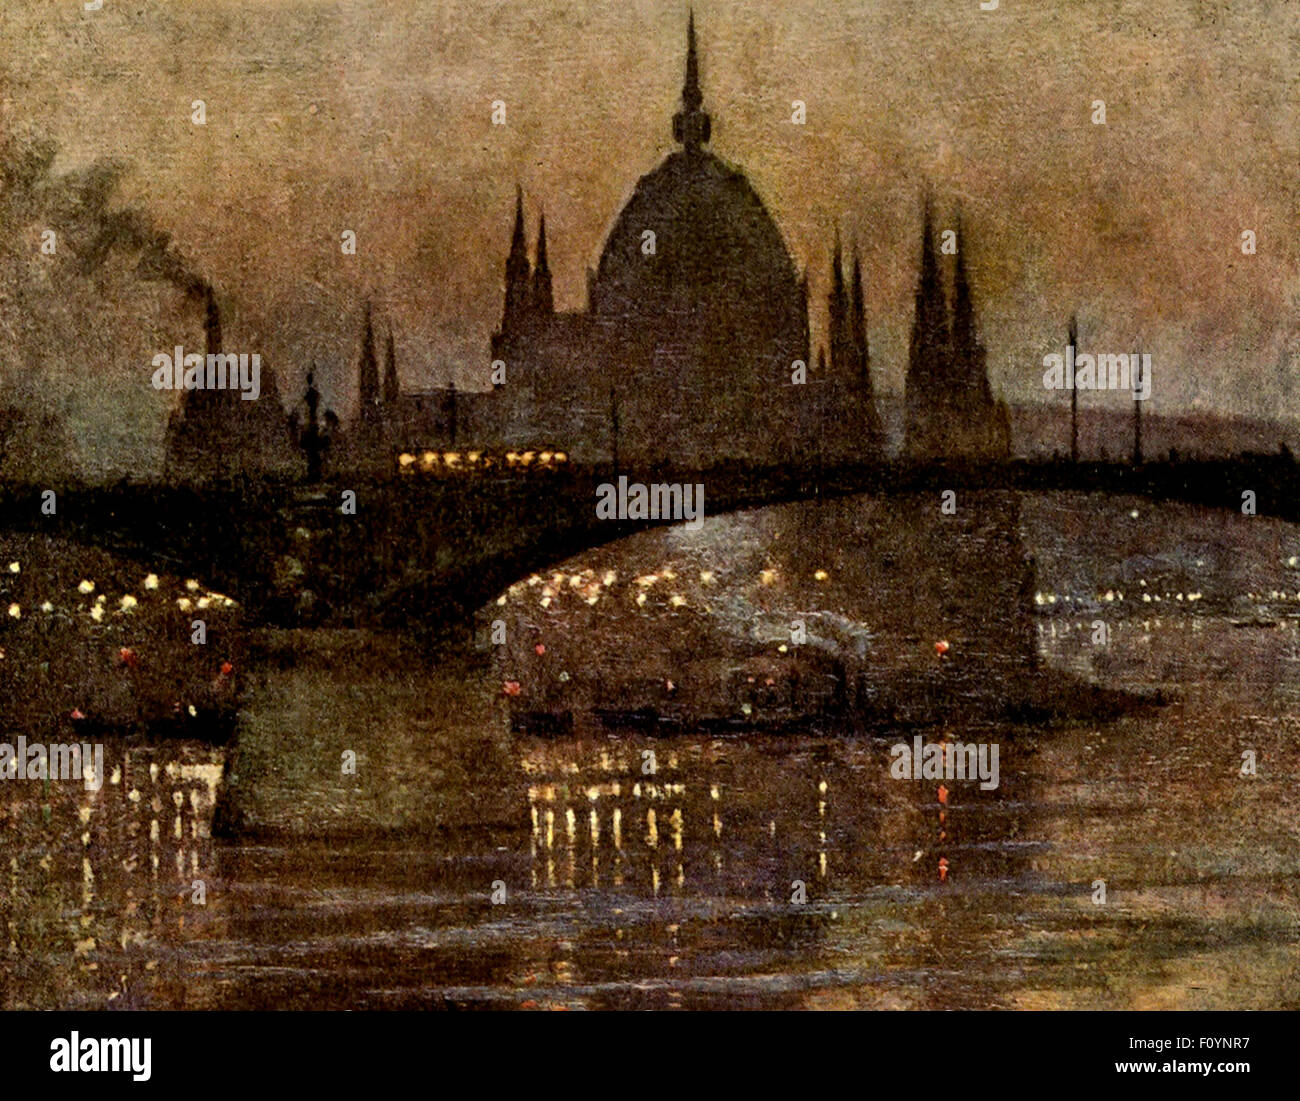 Les chambres du Parlement et le pont Margit, Budapest, Autriche-Hongrie, vers 1910 Banque D'Images